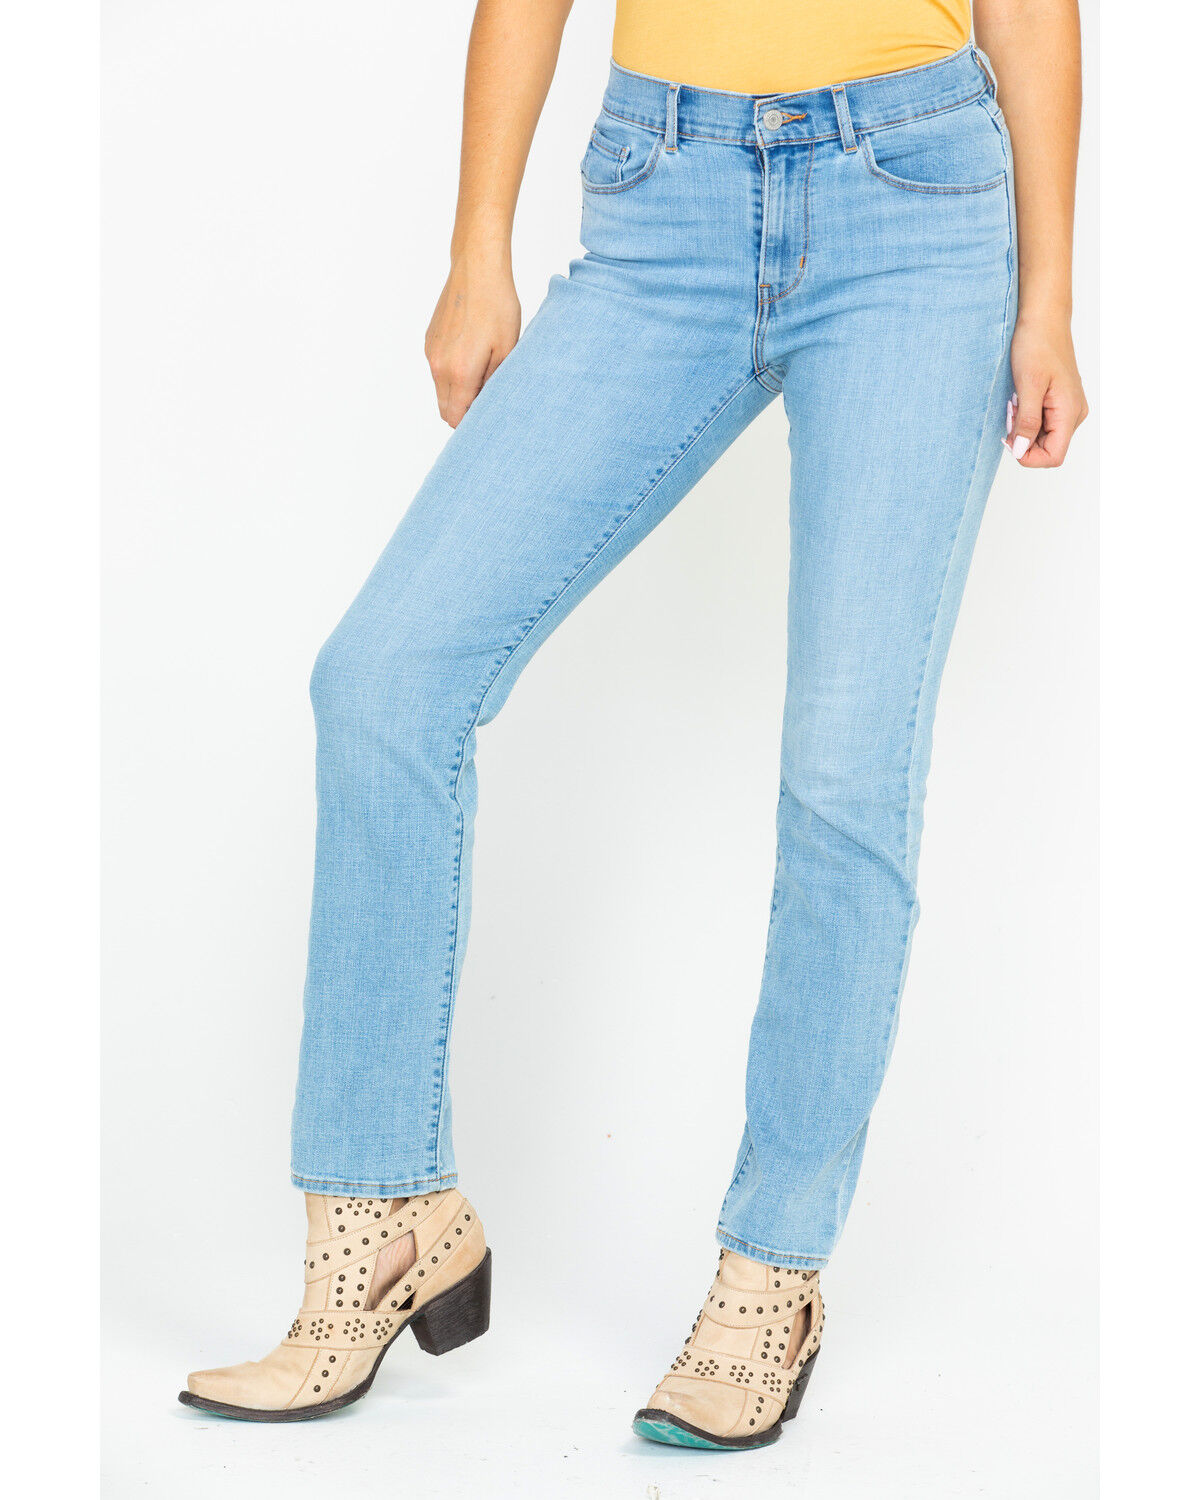 women's 711 skinny jeans